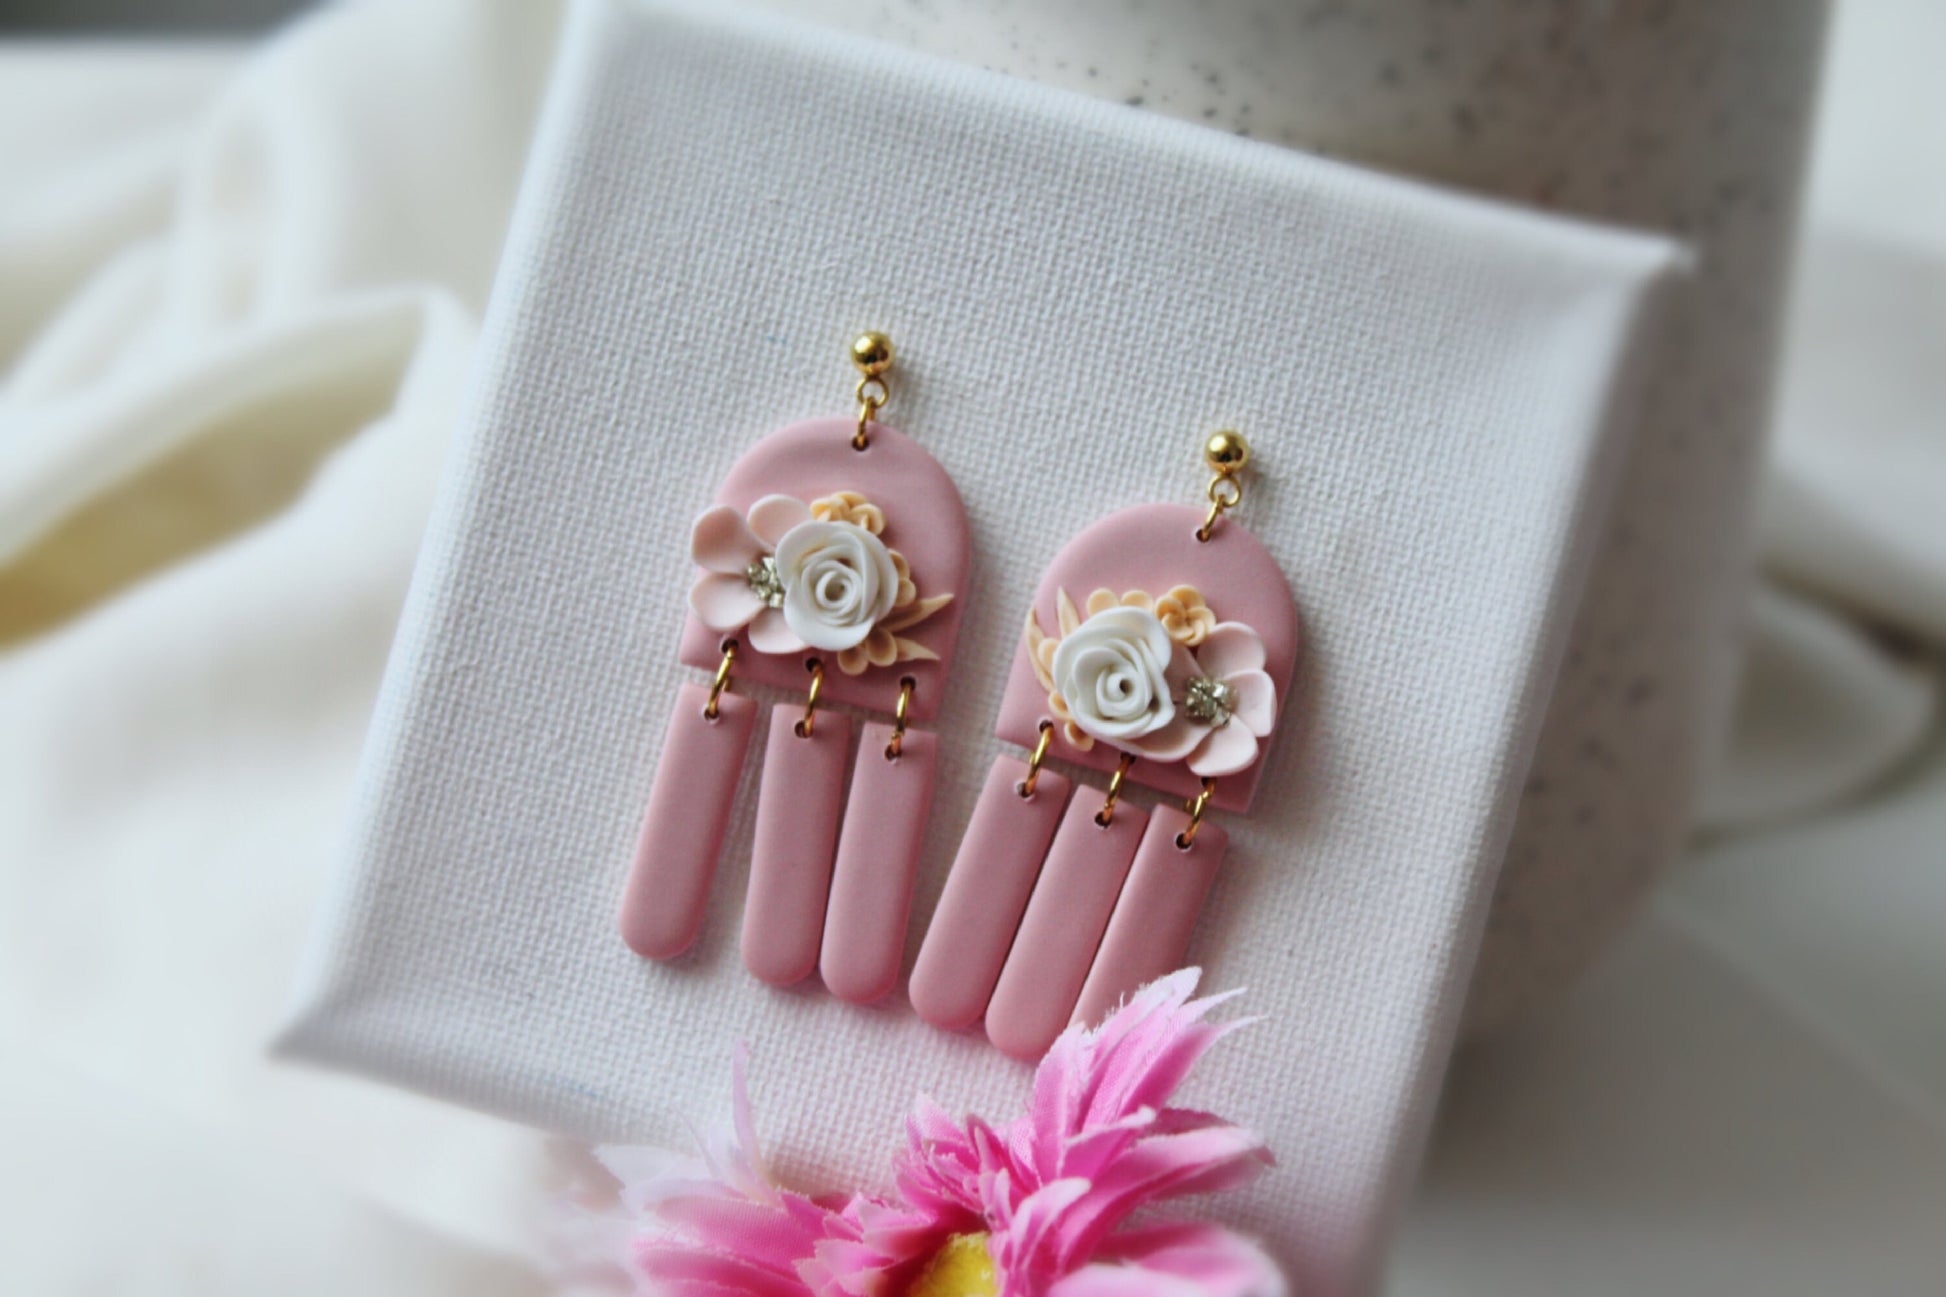 Floral Earrings, Valentines Day Earrings, Flower Earrings, Pink, Wedding Earrings, Polymer Clay Earrings, Earrings Dangle, Spring,Handmade